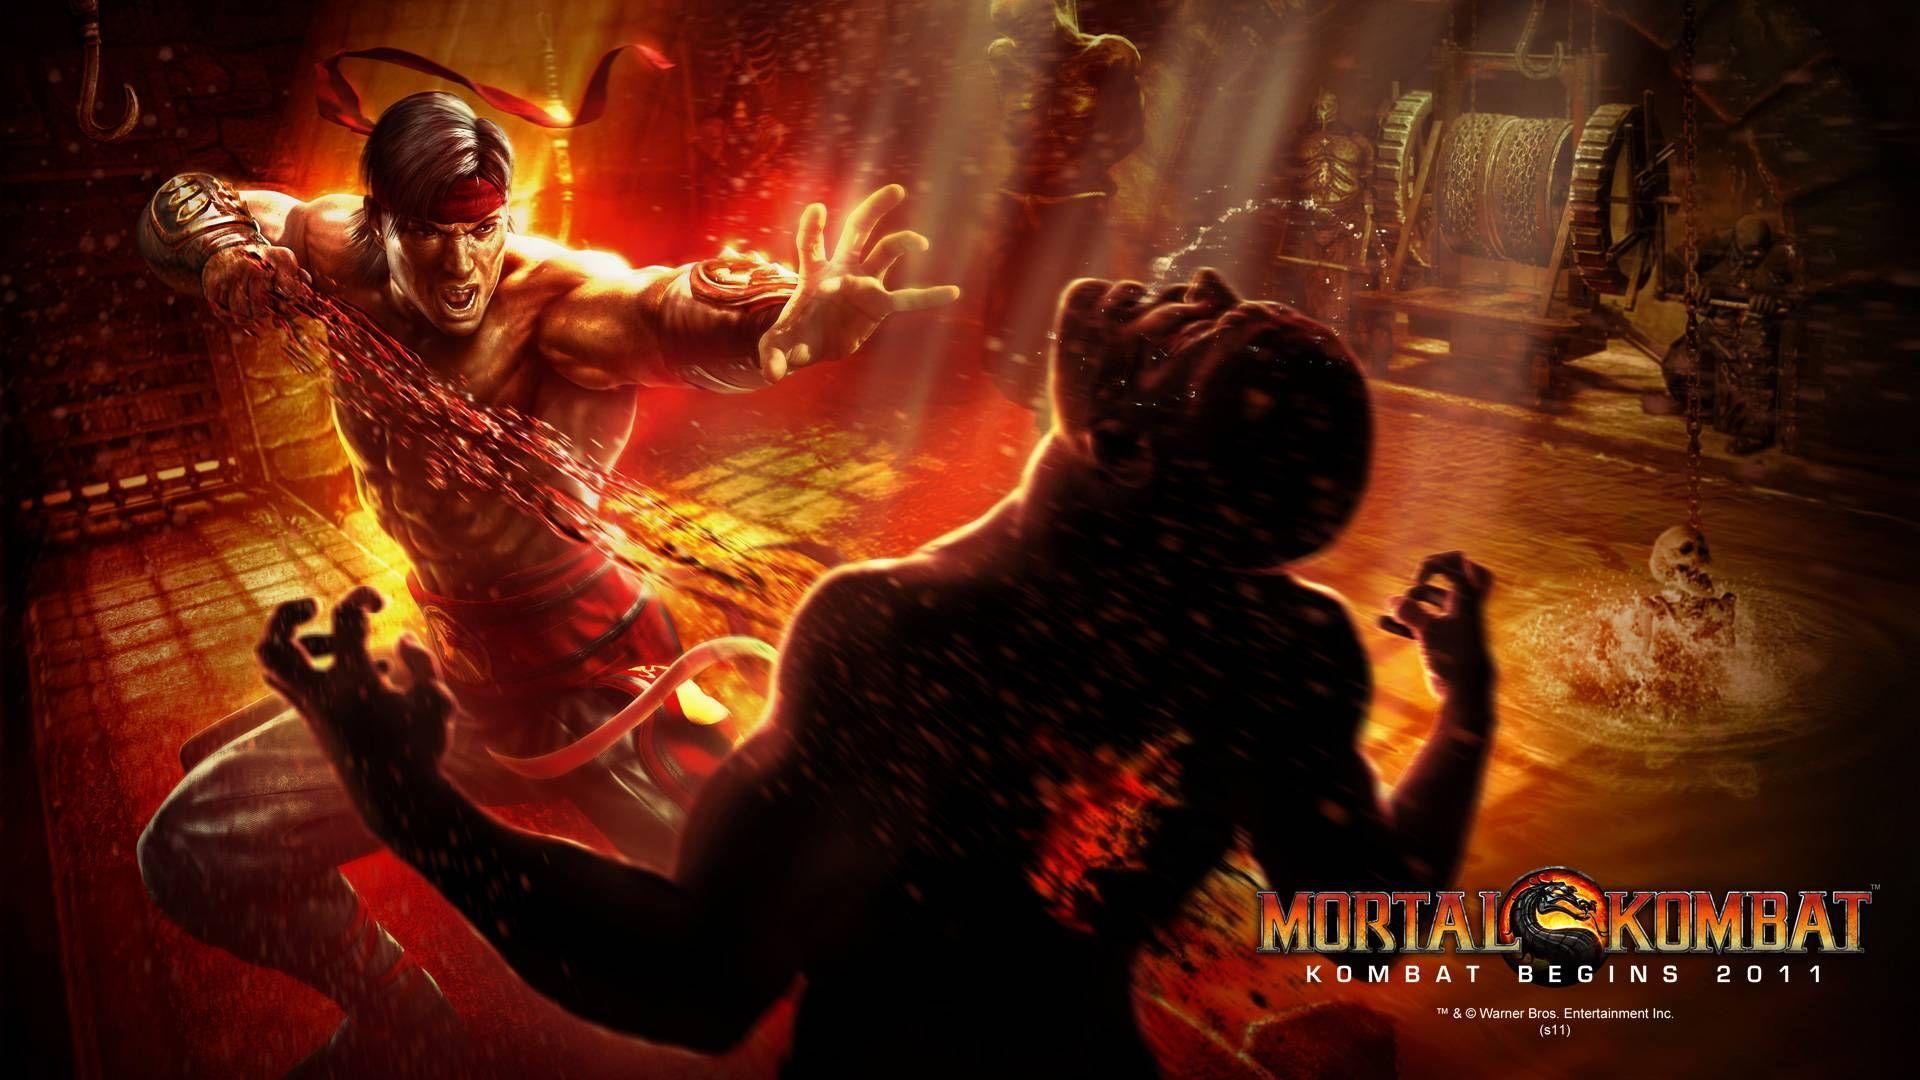 Mortal Kombat Wallpaper in full 1080P .com